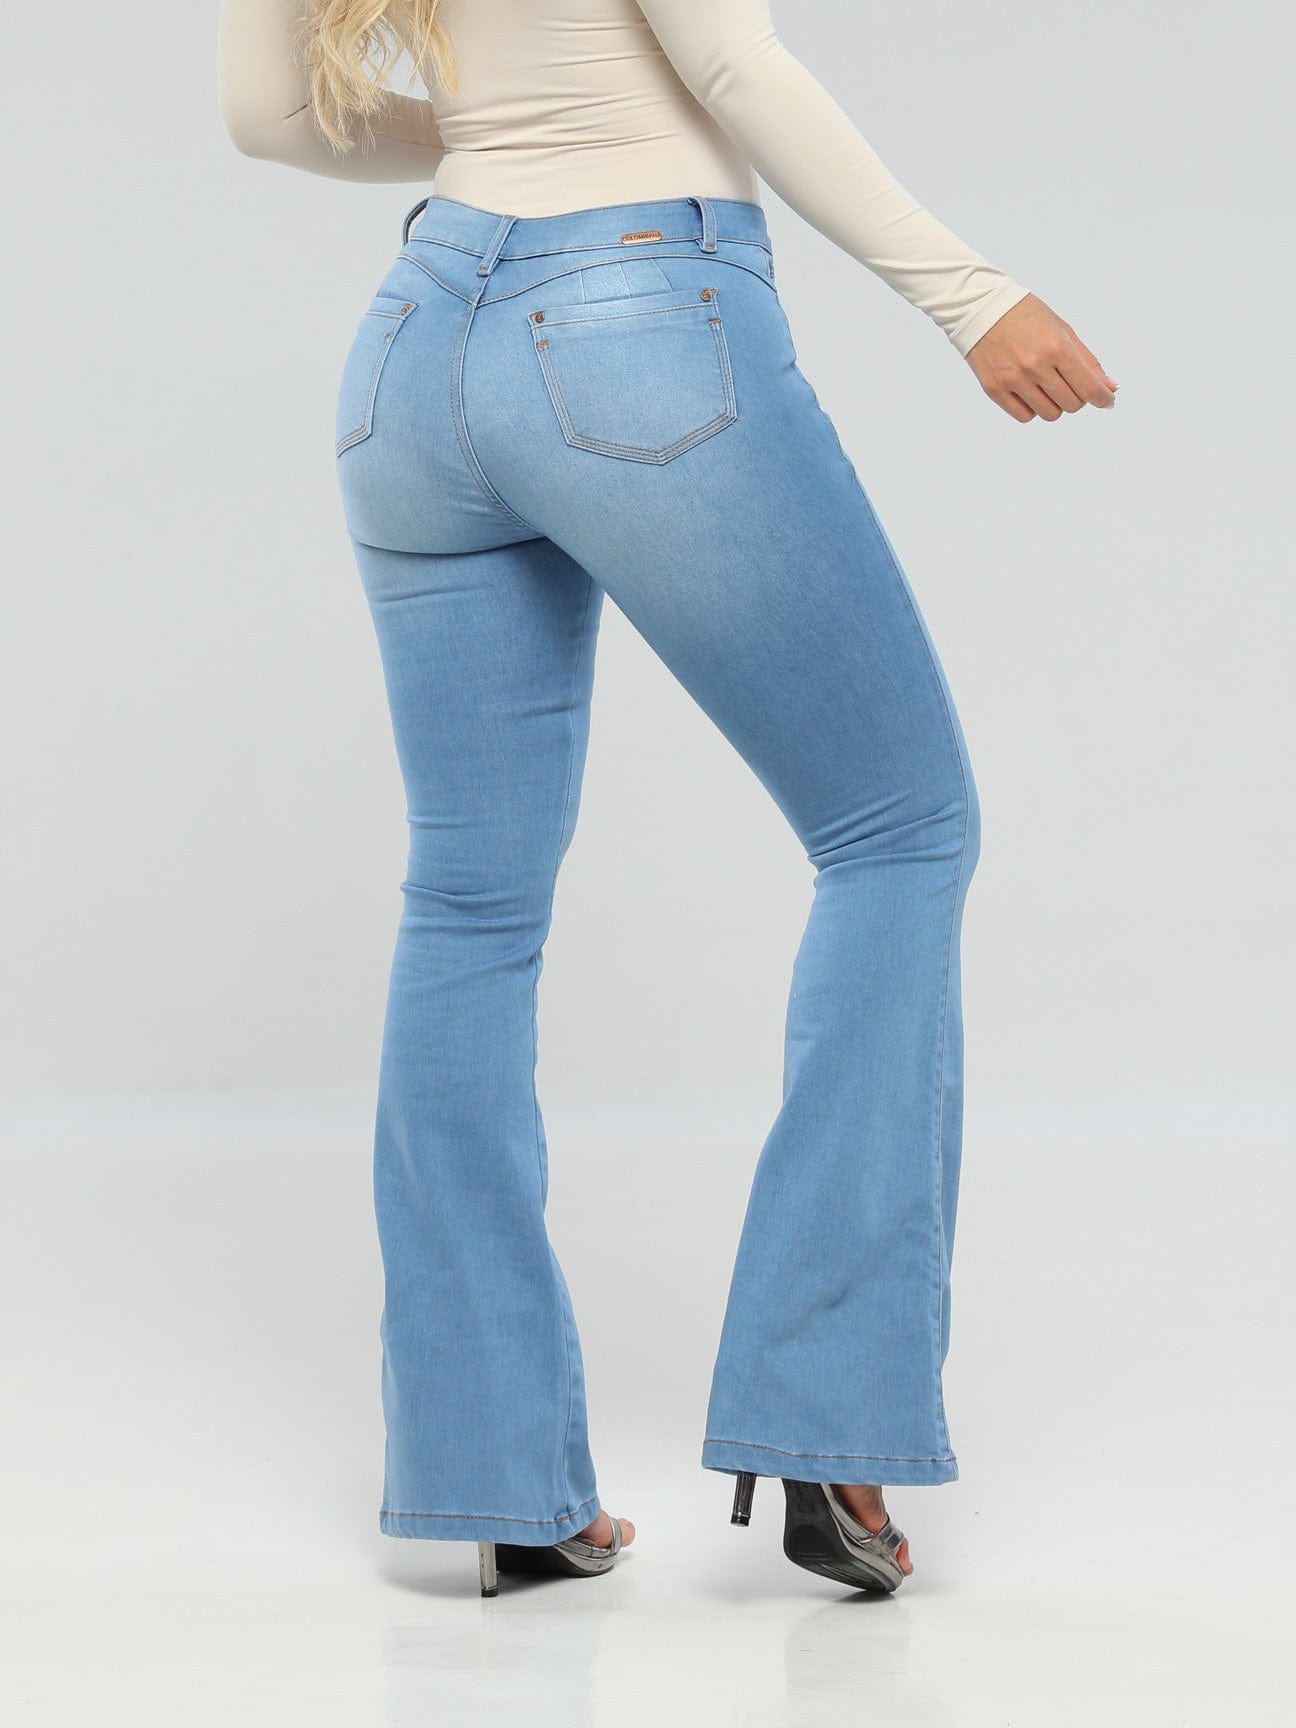 ▷ Jeans Dama Levantacola Colombiano Cokette - CENTRO COMERCIAL